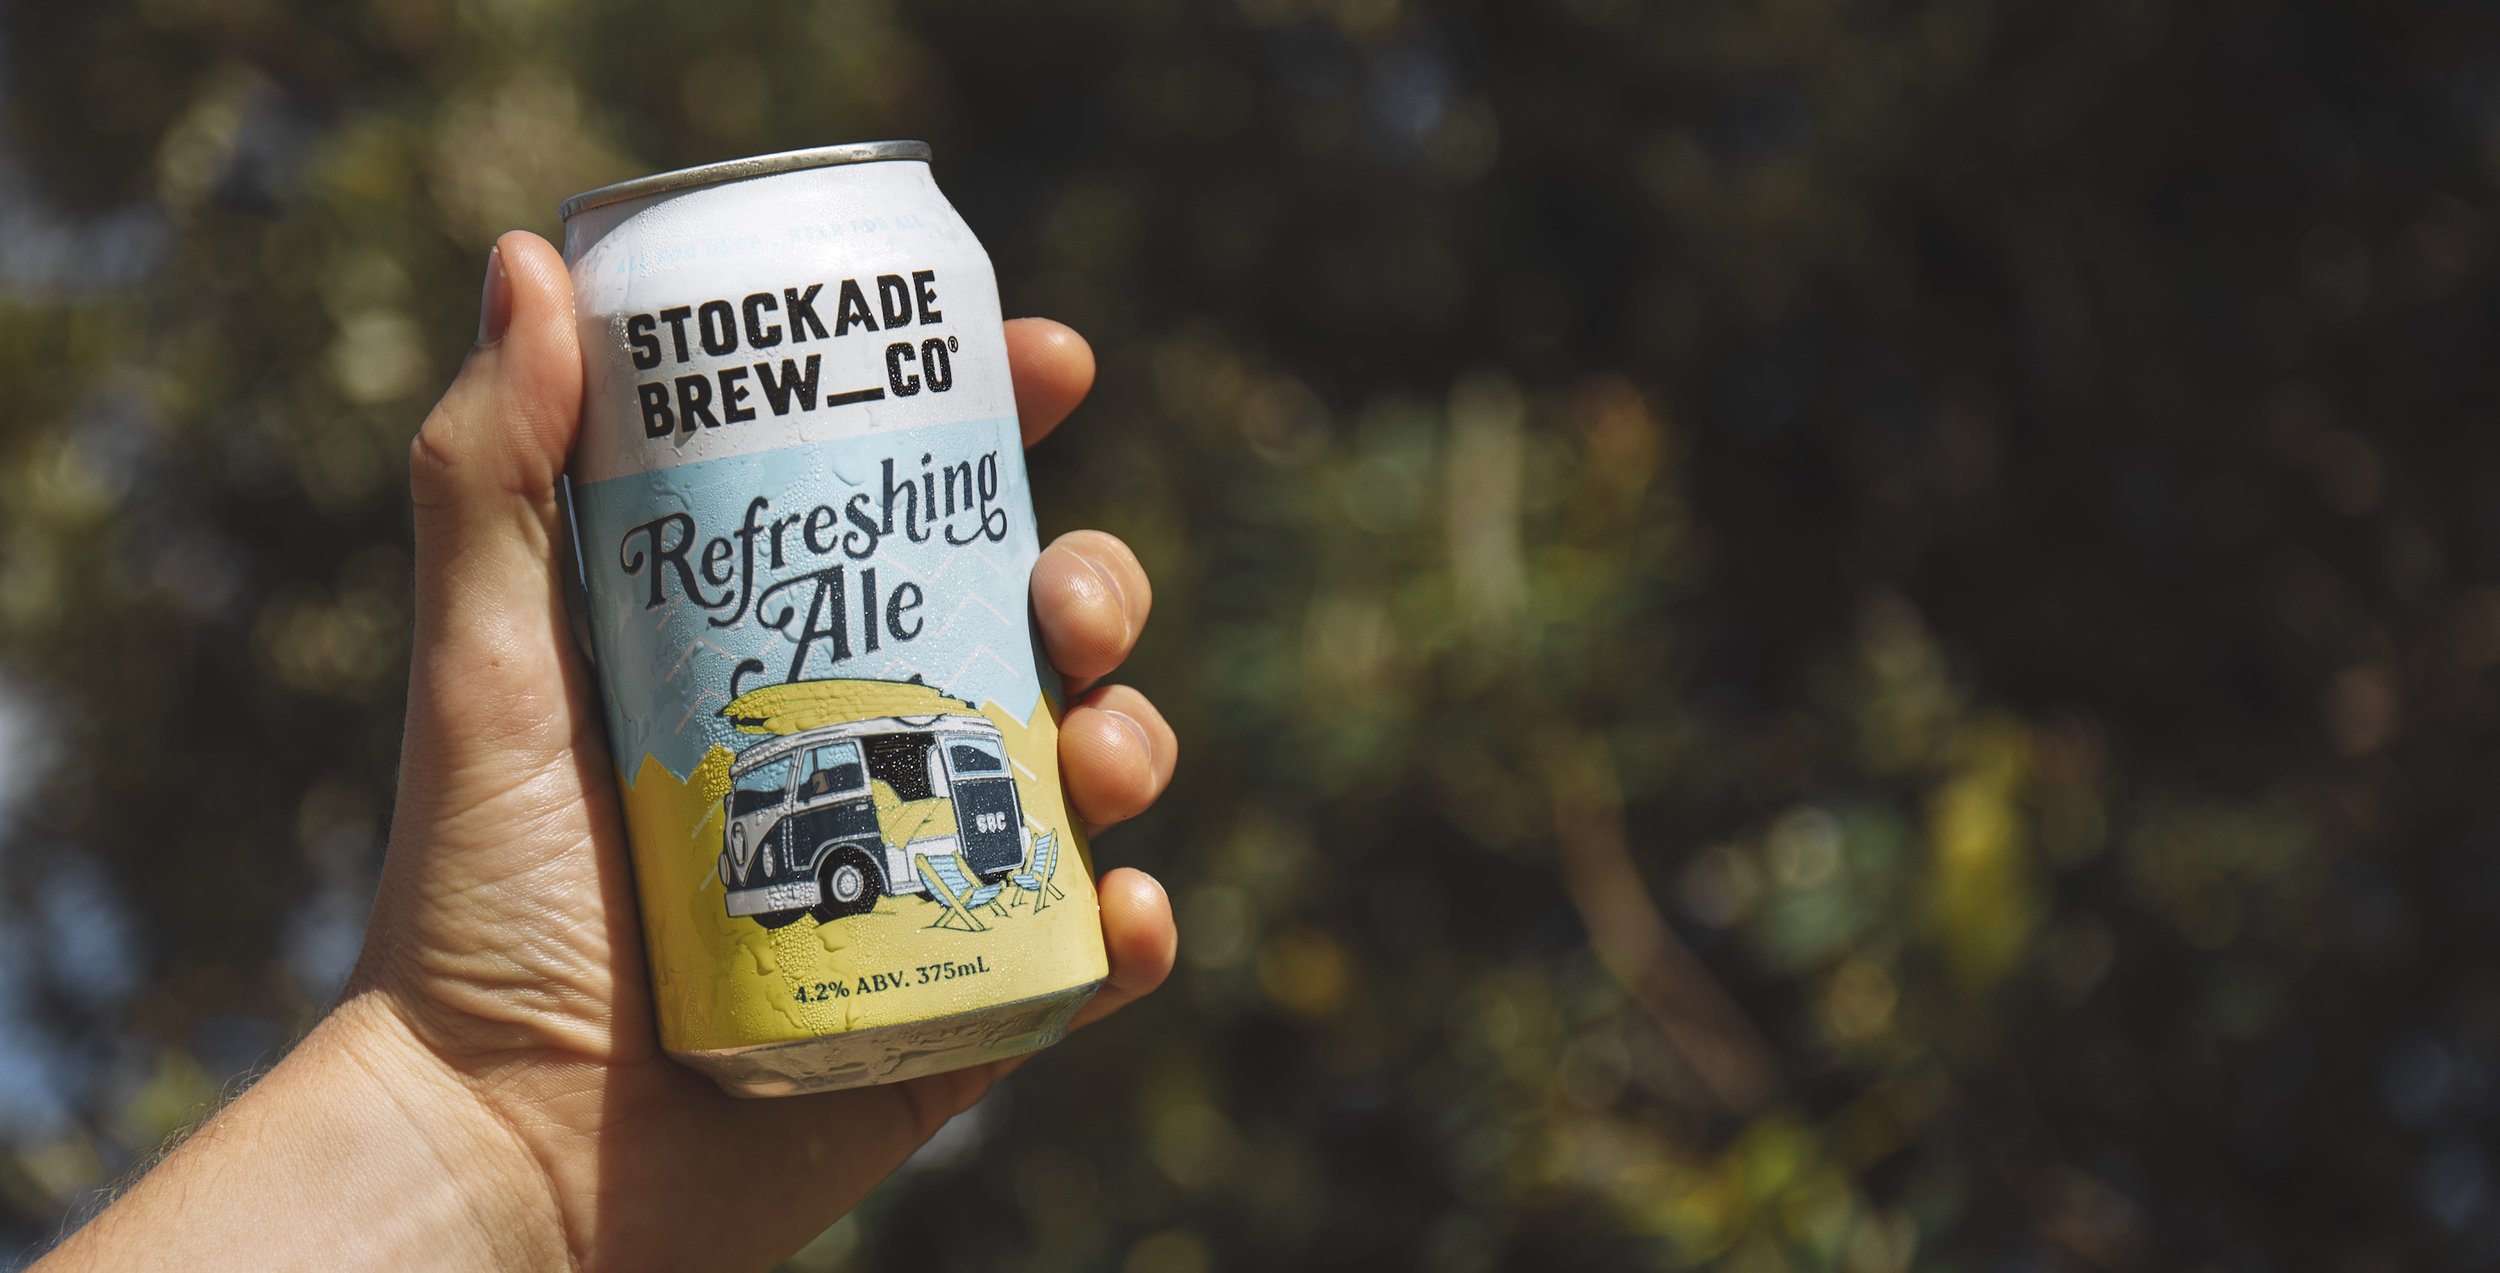 Stockade-Brew-Co-Refreshing-Banner.jpg